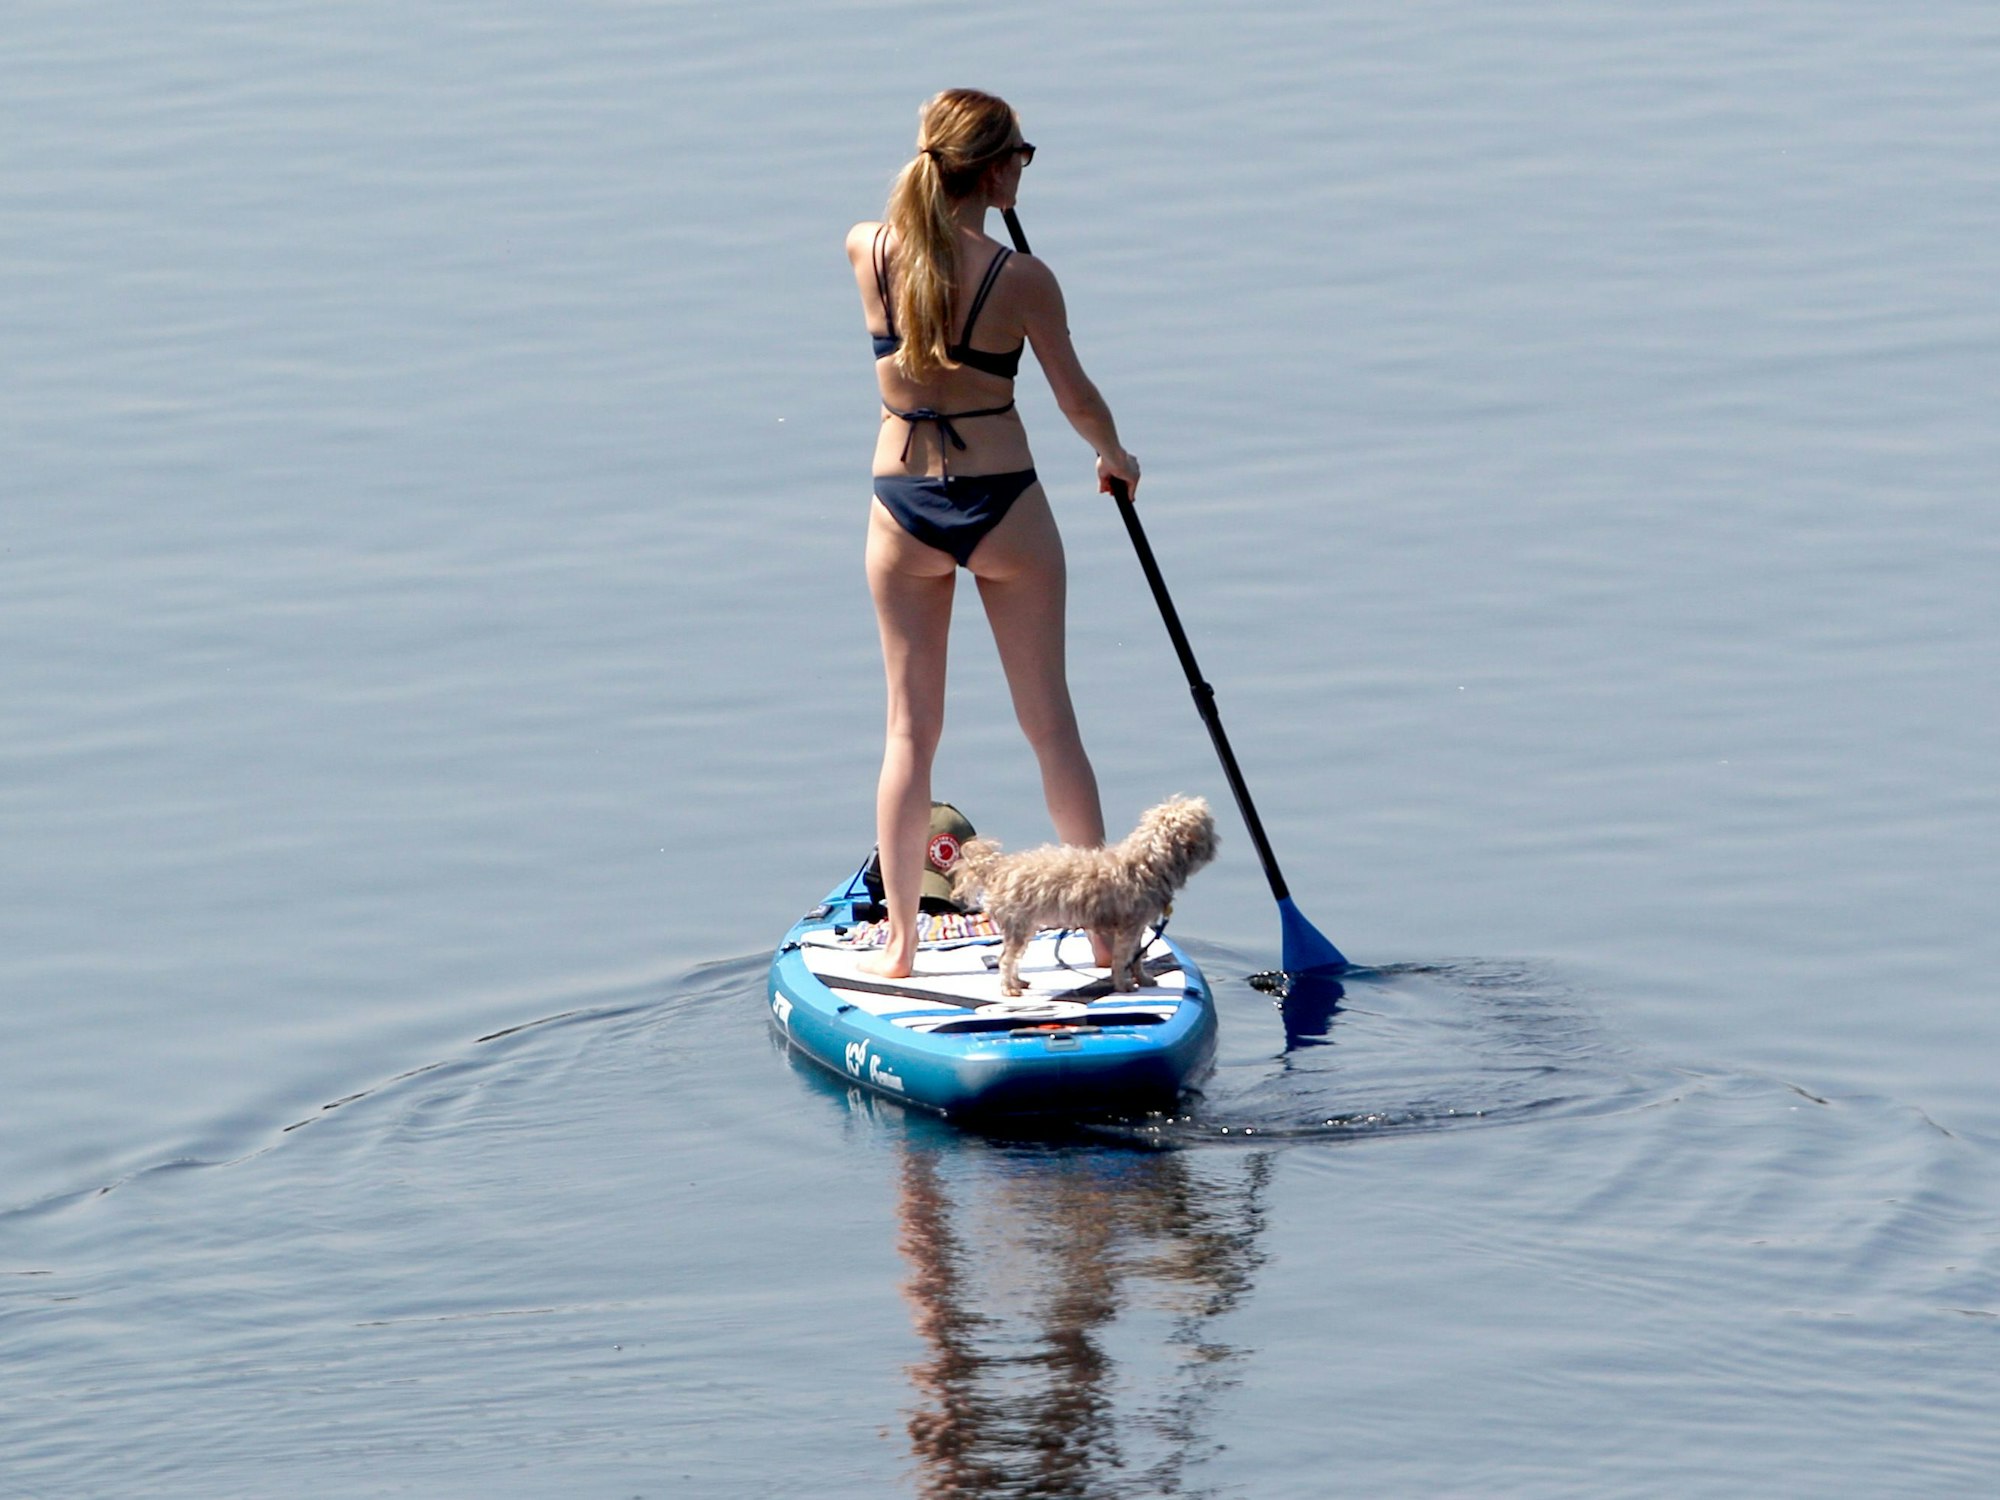 Eine Frau fährt im Sommer 2020 mit ihrem Stand-Up Paddle Board in Duisburg übers Wasser: In dieser Woche wird der erste Sommertag erwartet.